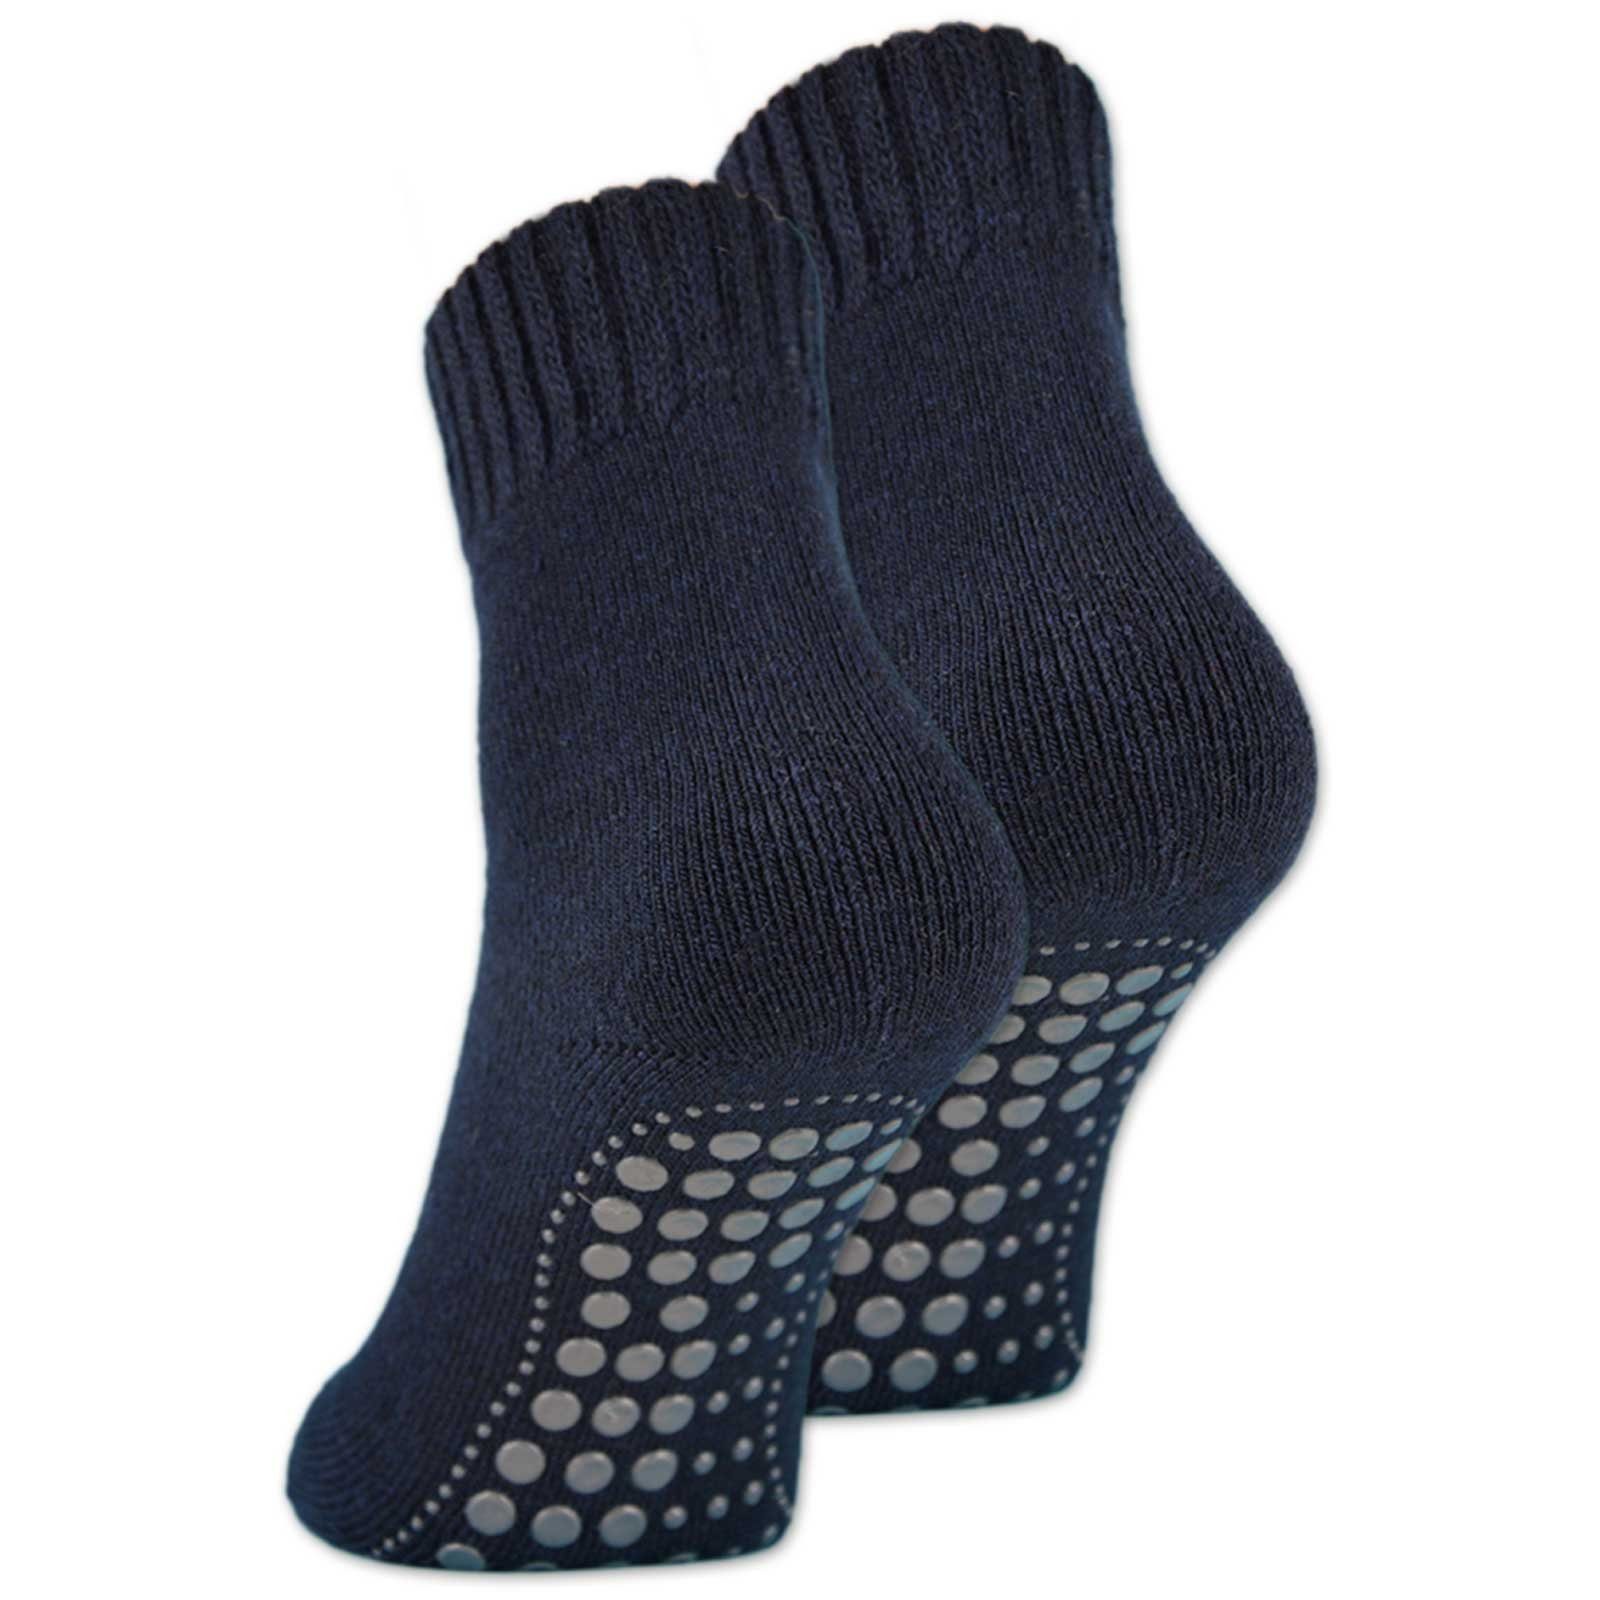 oder mit ABS 6 Socken Herren (Navy, Anti Wolle 43-46) Paar sockenkauf24 21463 Rutsch ABS-Socken Damen Socken 2, & 4 WP 2-Paar, -